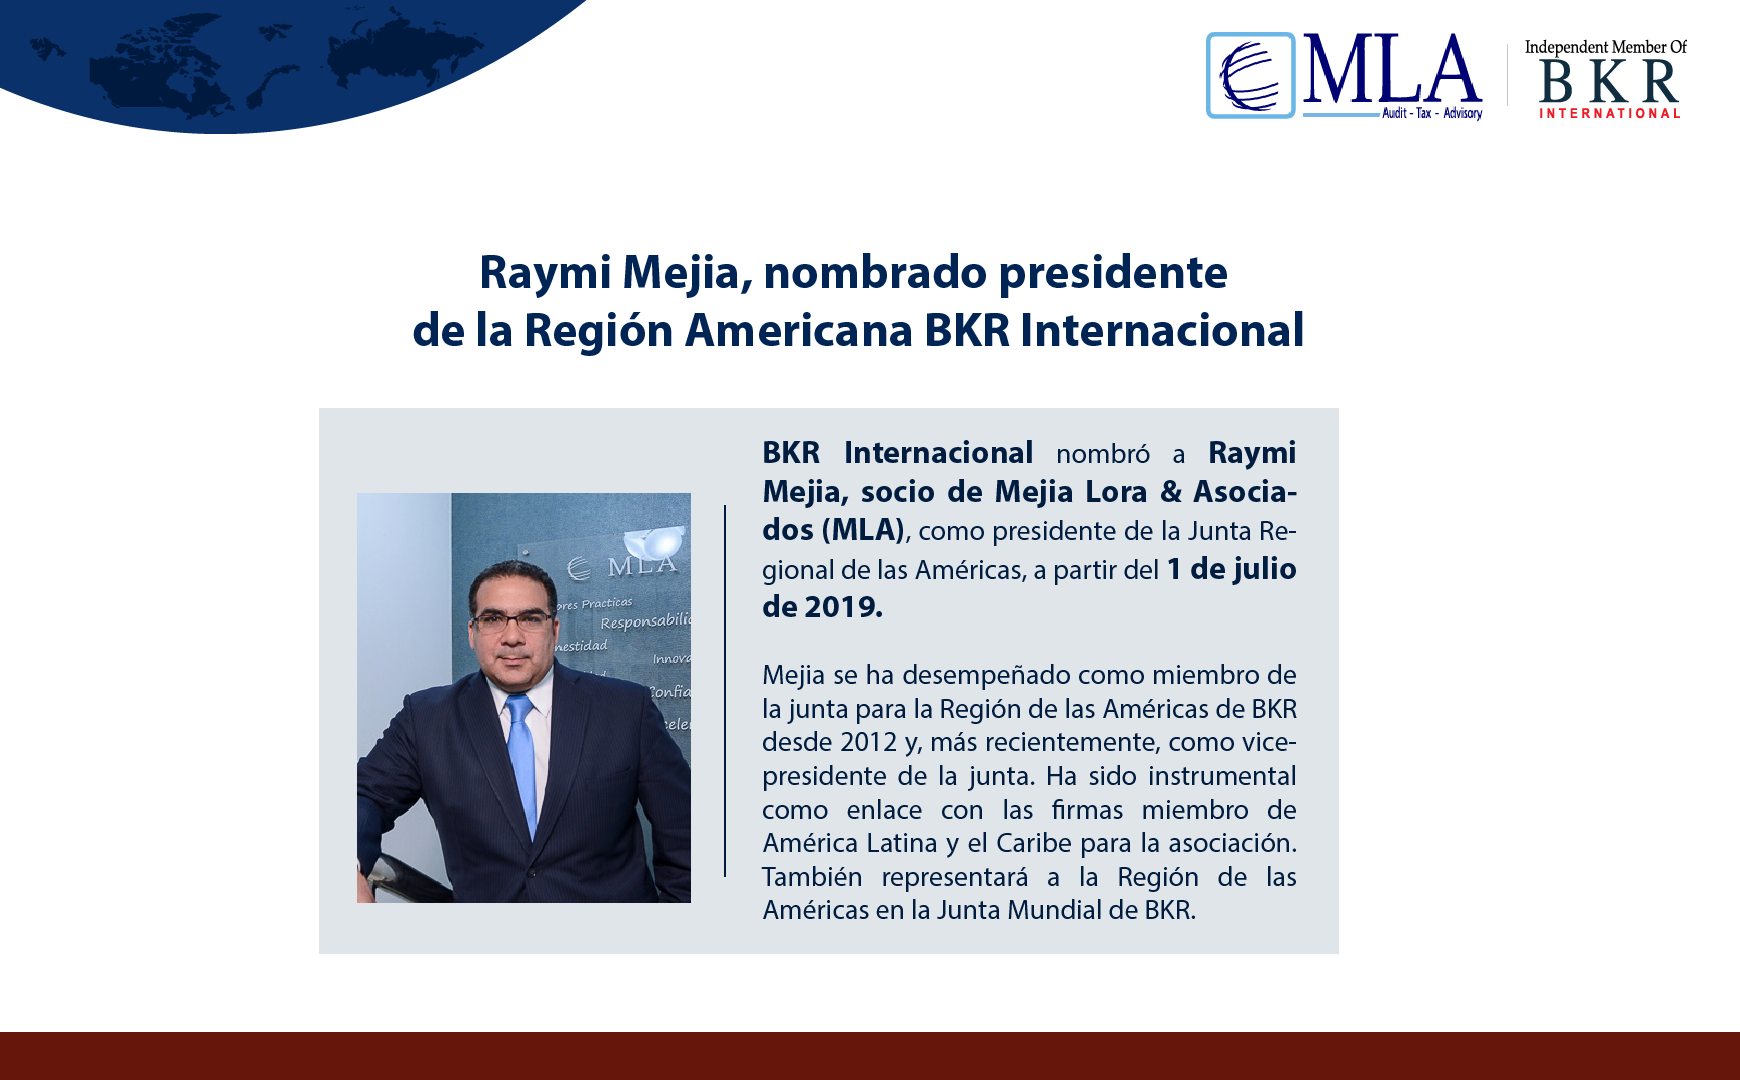 BKR International nombró a Raymi Mejia, socio de Mejia Lora & Asociados (MLA), como presidente de la Junta Regional de las Américas.